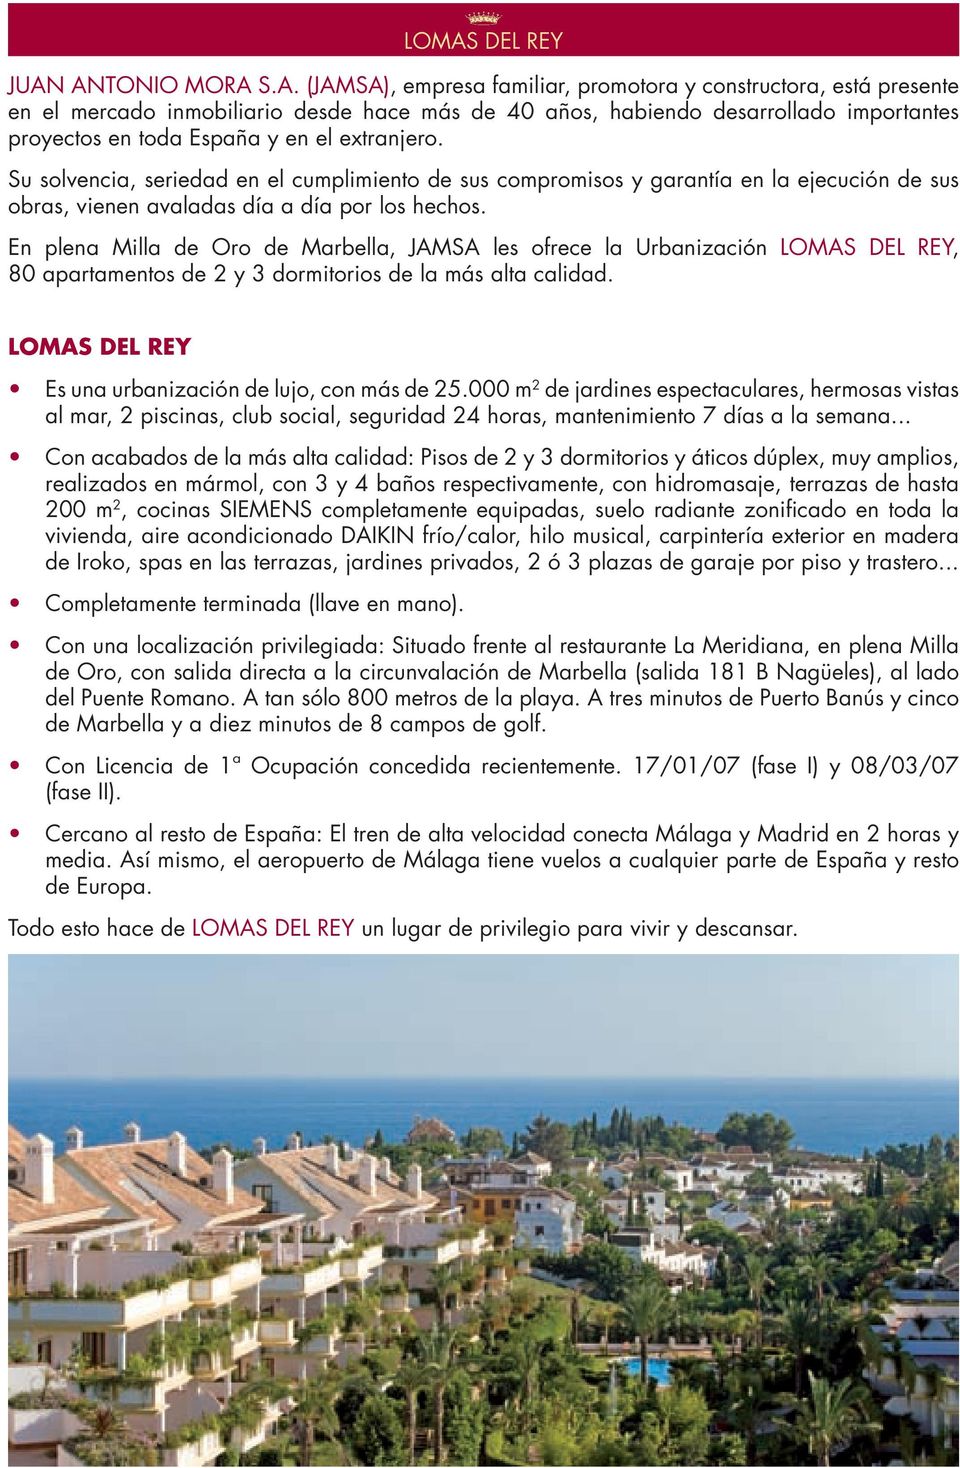 En plena Milla de Oro de Marbella, JAMSA les ofrece la Urbanización LOMAS DEL REY, 80 apartamentos de 2 y 3 dormitorios de la más alta calidad.